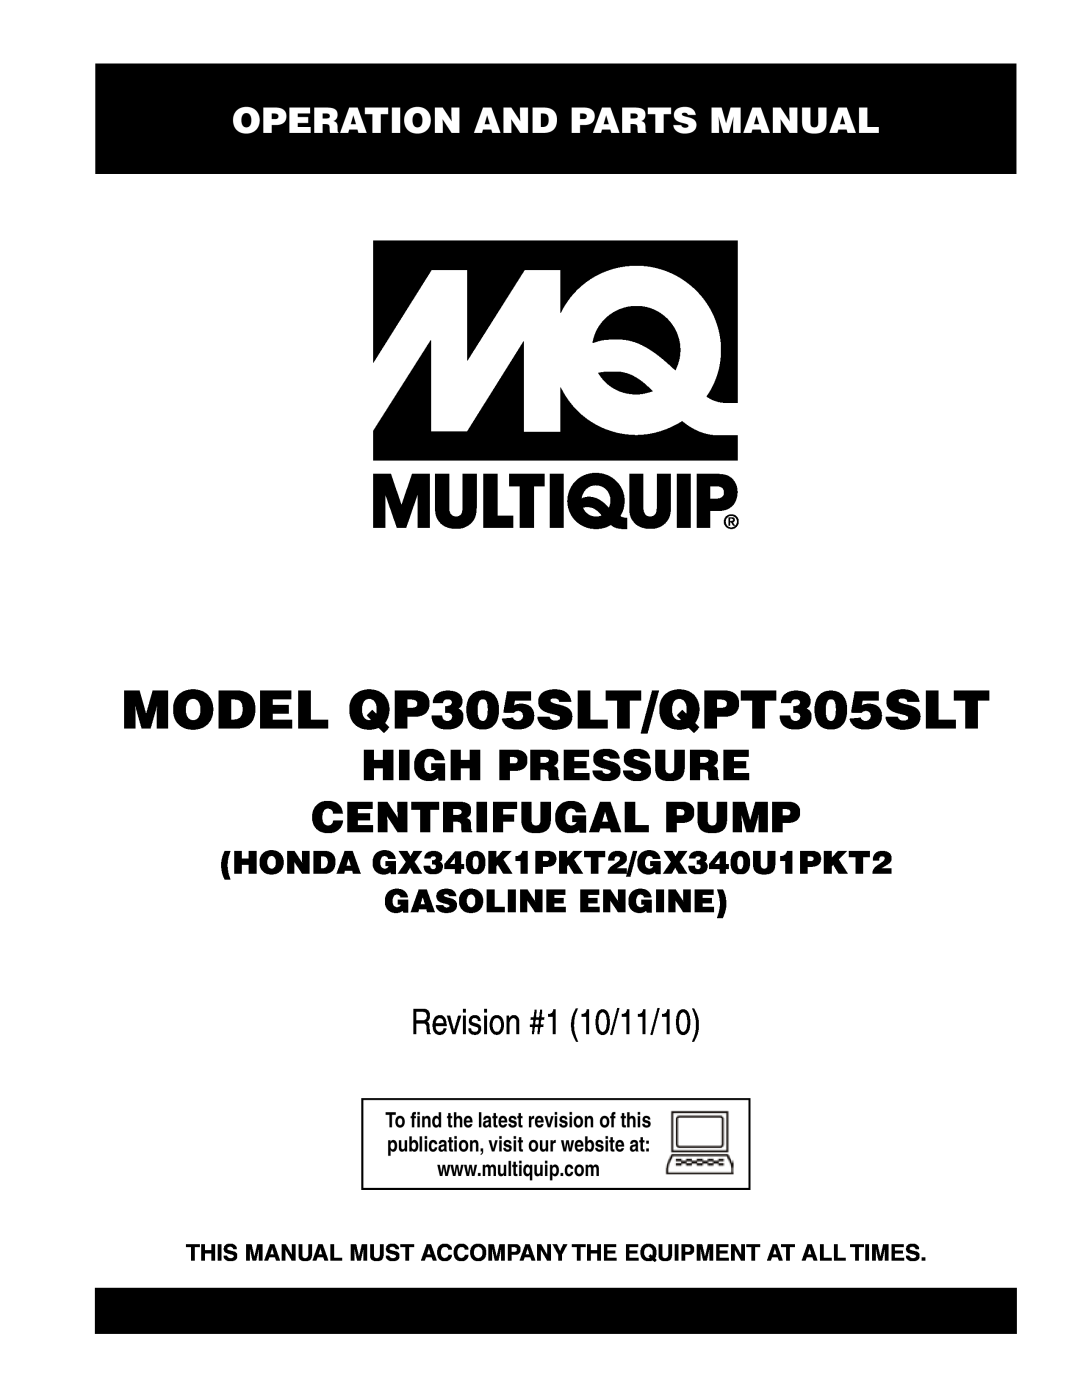 Multiquip manual Operation and Parts Manual, MODEL QP305SLT/QPT305SLT, High Pressure Centrifugal Pump 